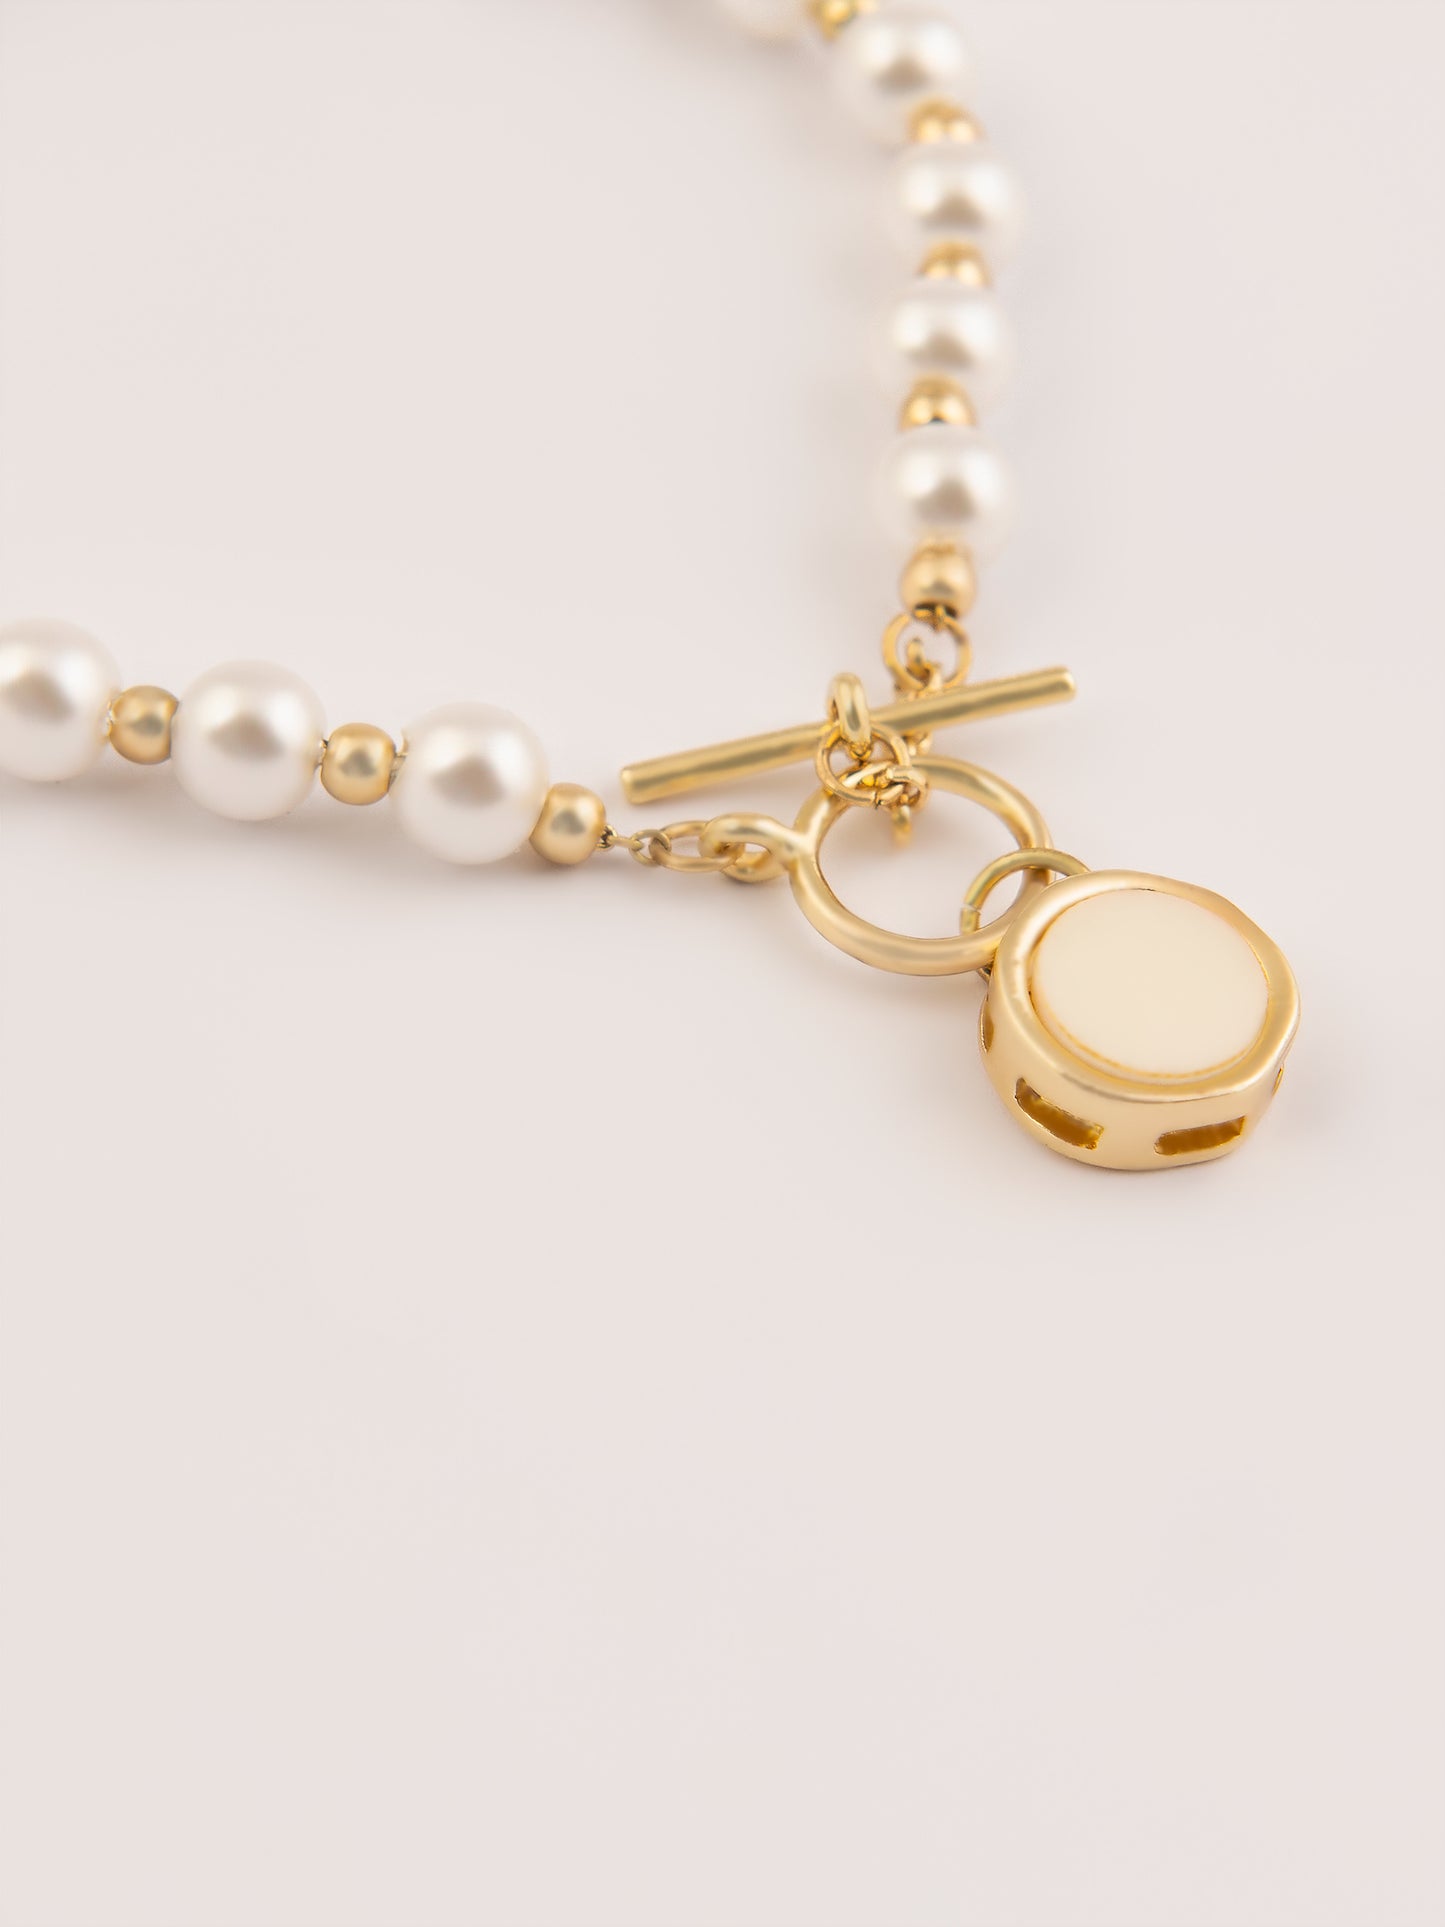 Pearl Embellished Bracelet